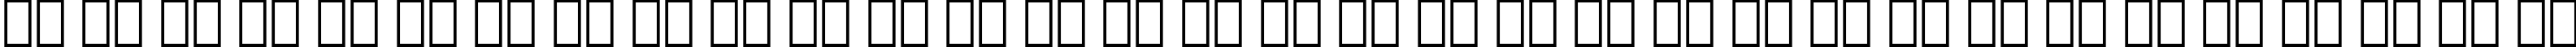 Пример написания русского алфавита шрифтом Caslon Bold Italic BT